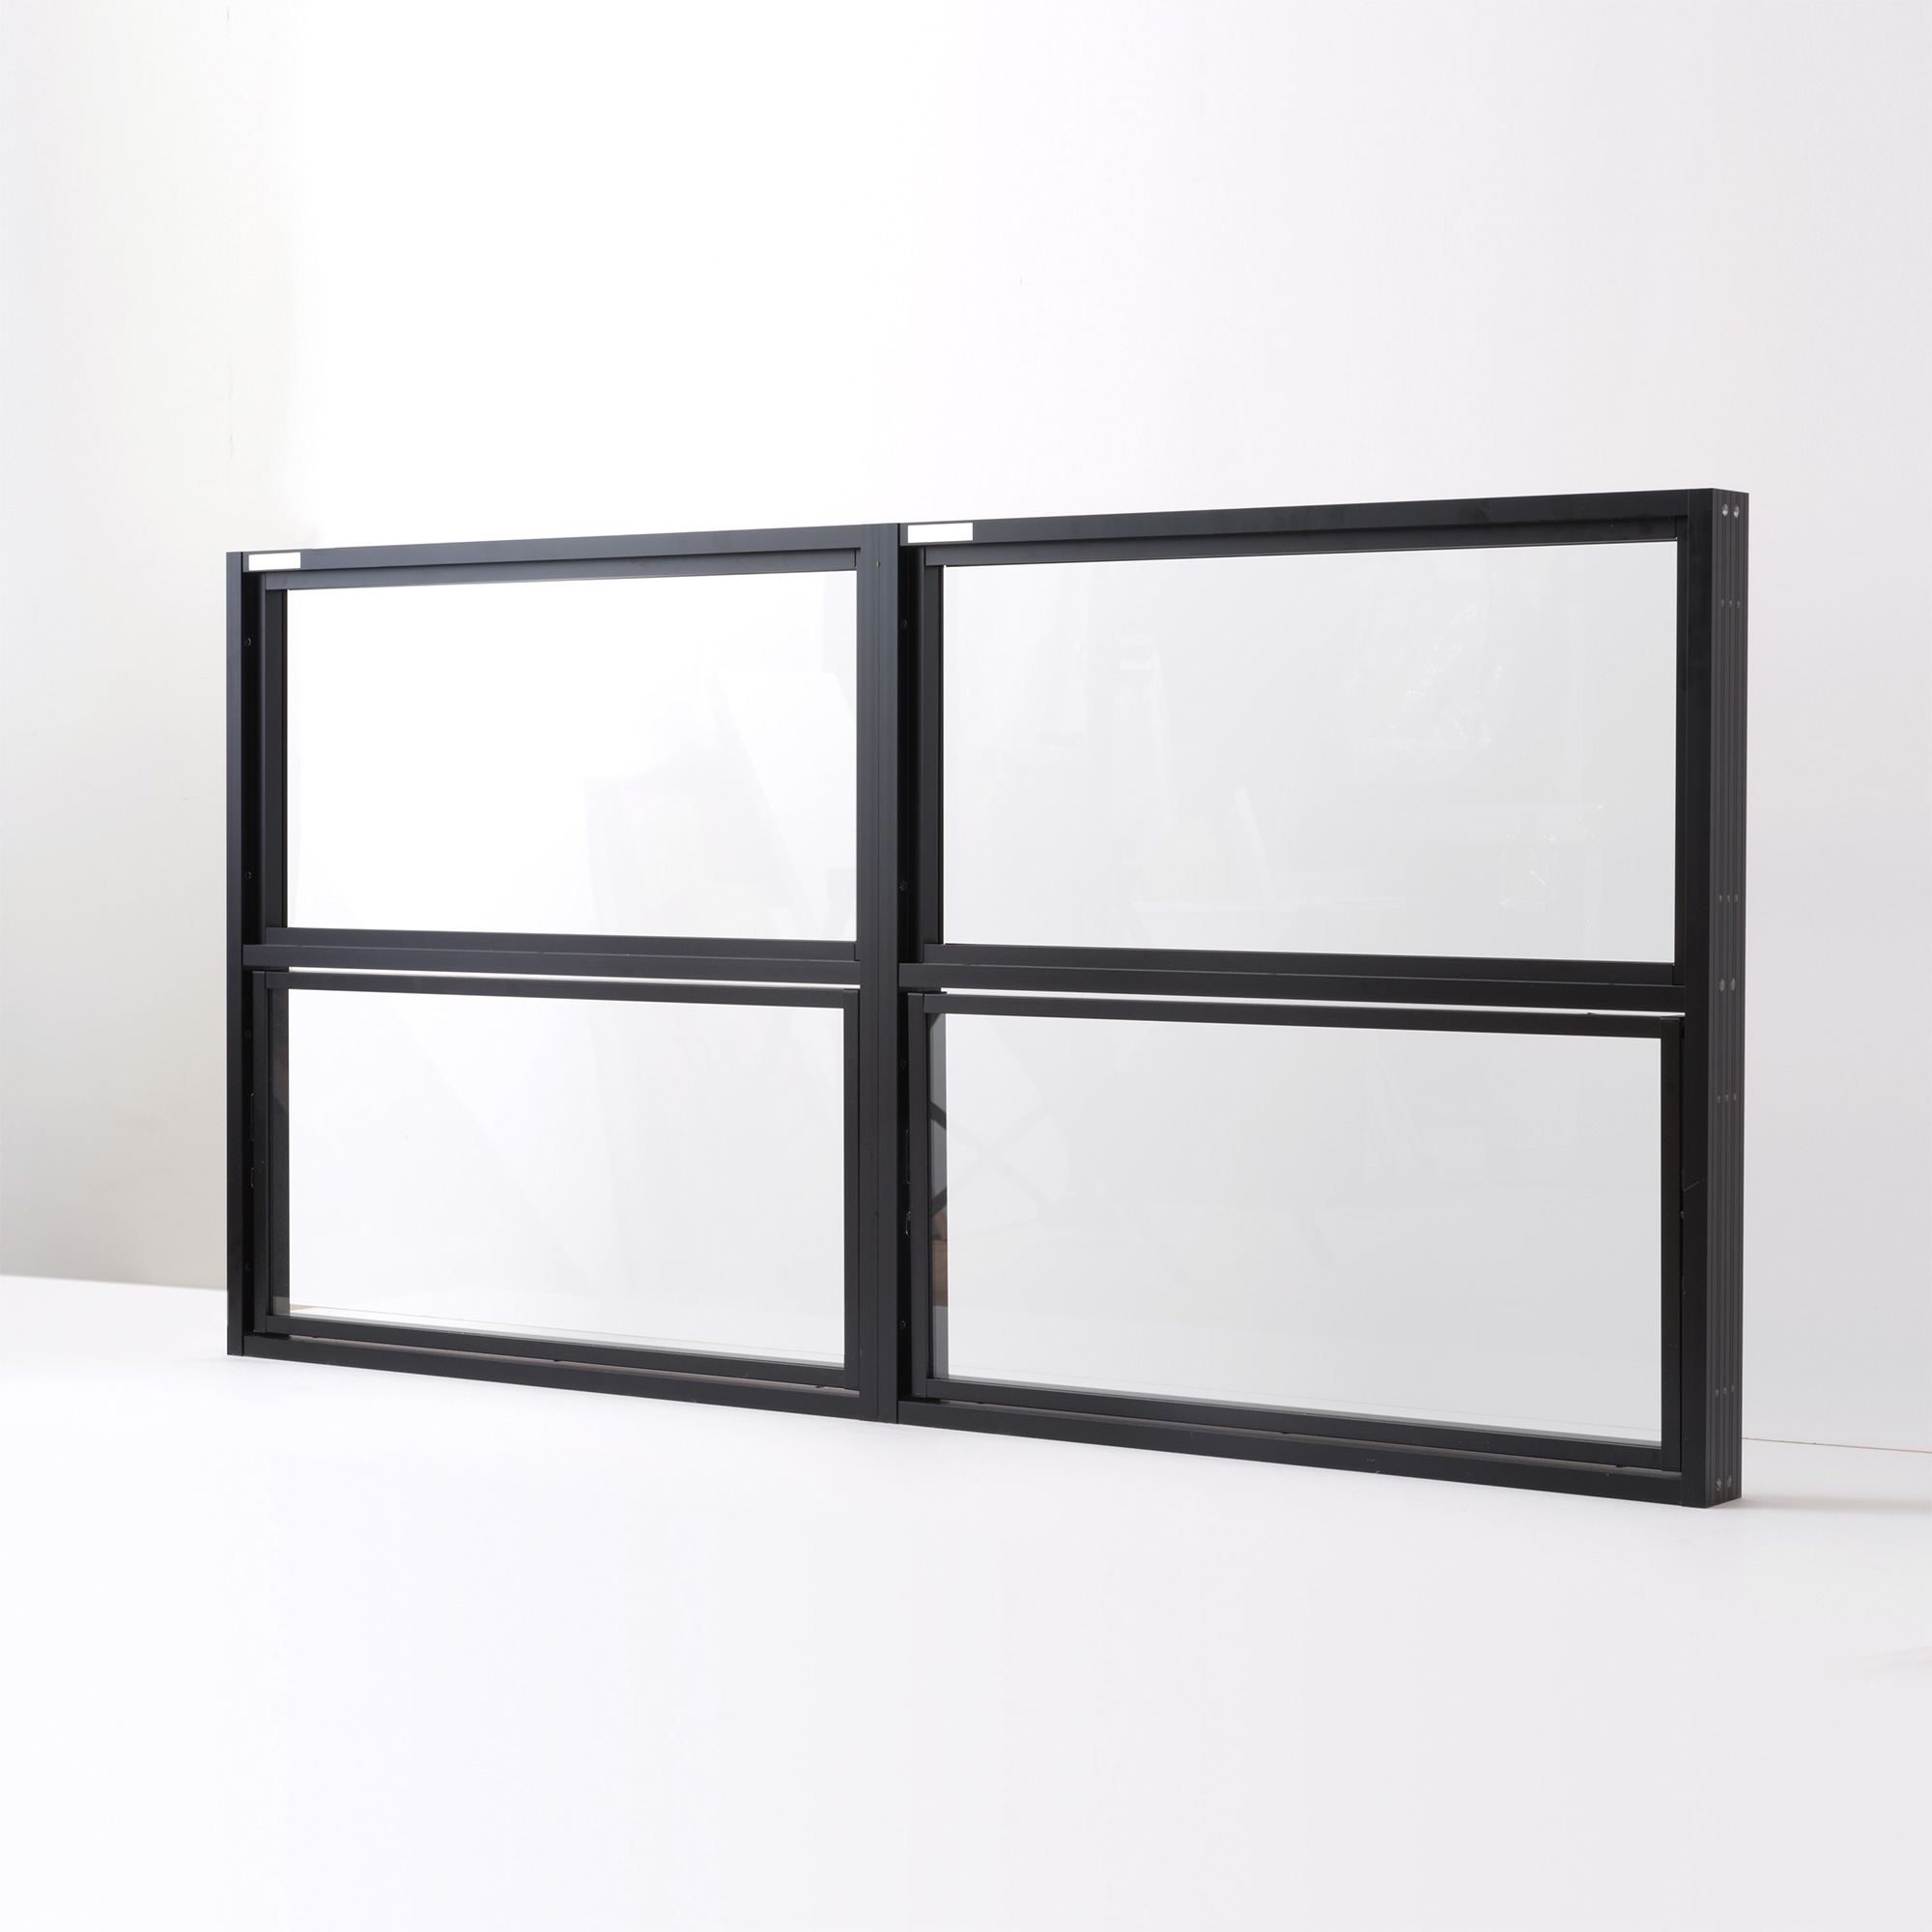 室内アルミサッシ FIX窓 ブラック ガラス DW-DR013-01-G201 FIX窓（上）＋回転窓（下）の2連結　W1400 H700（W700 上H350 下H350）クリアガラス